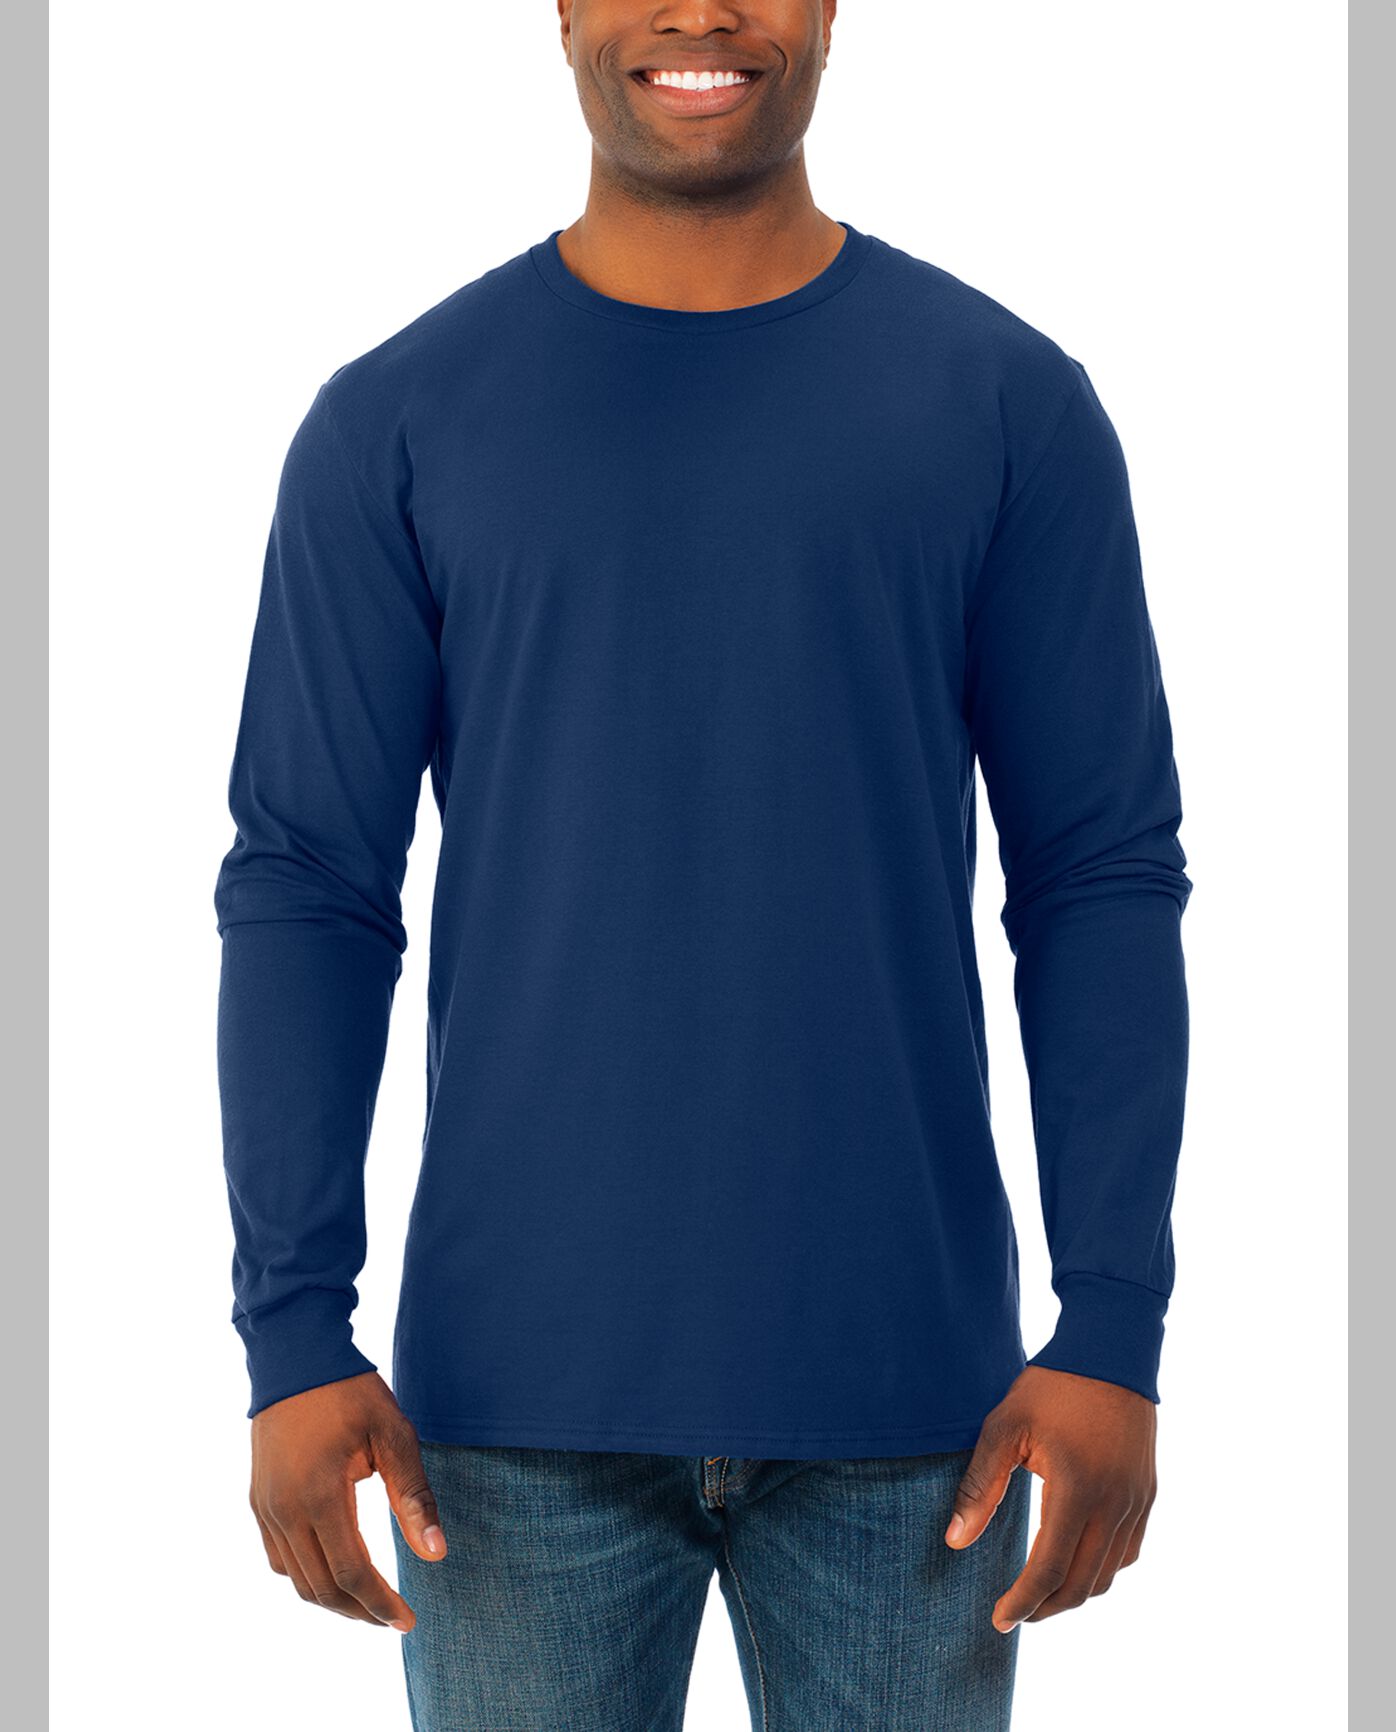 Men's Soft Long Sleeve Crew T-Shirt, Extended Sizes 2 Pack J Navy